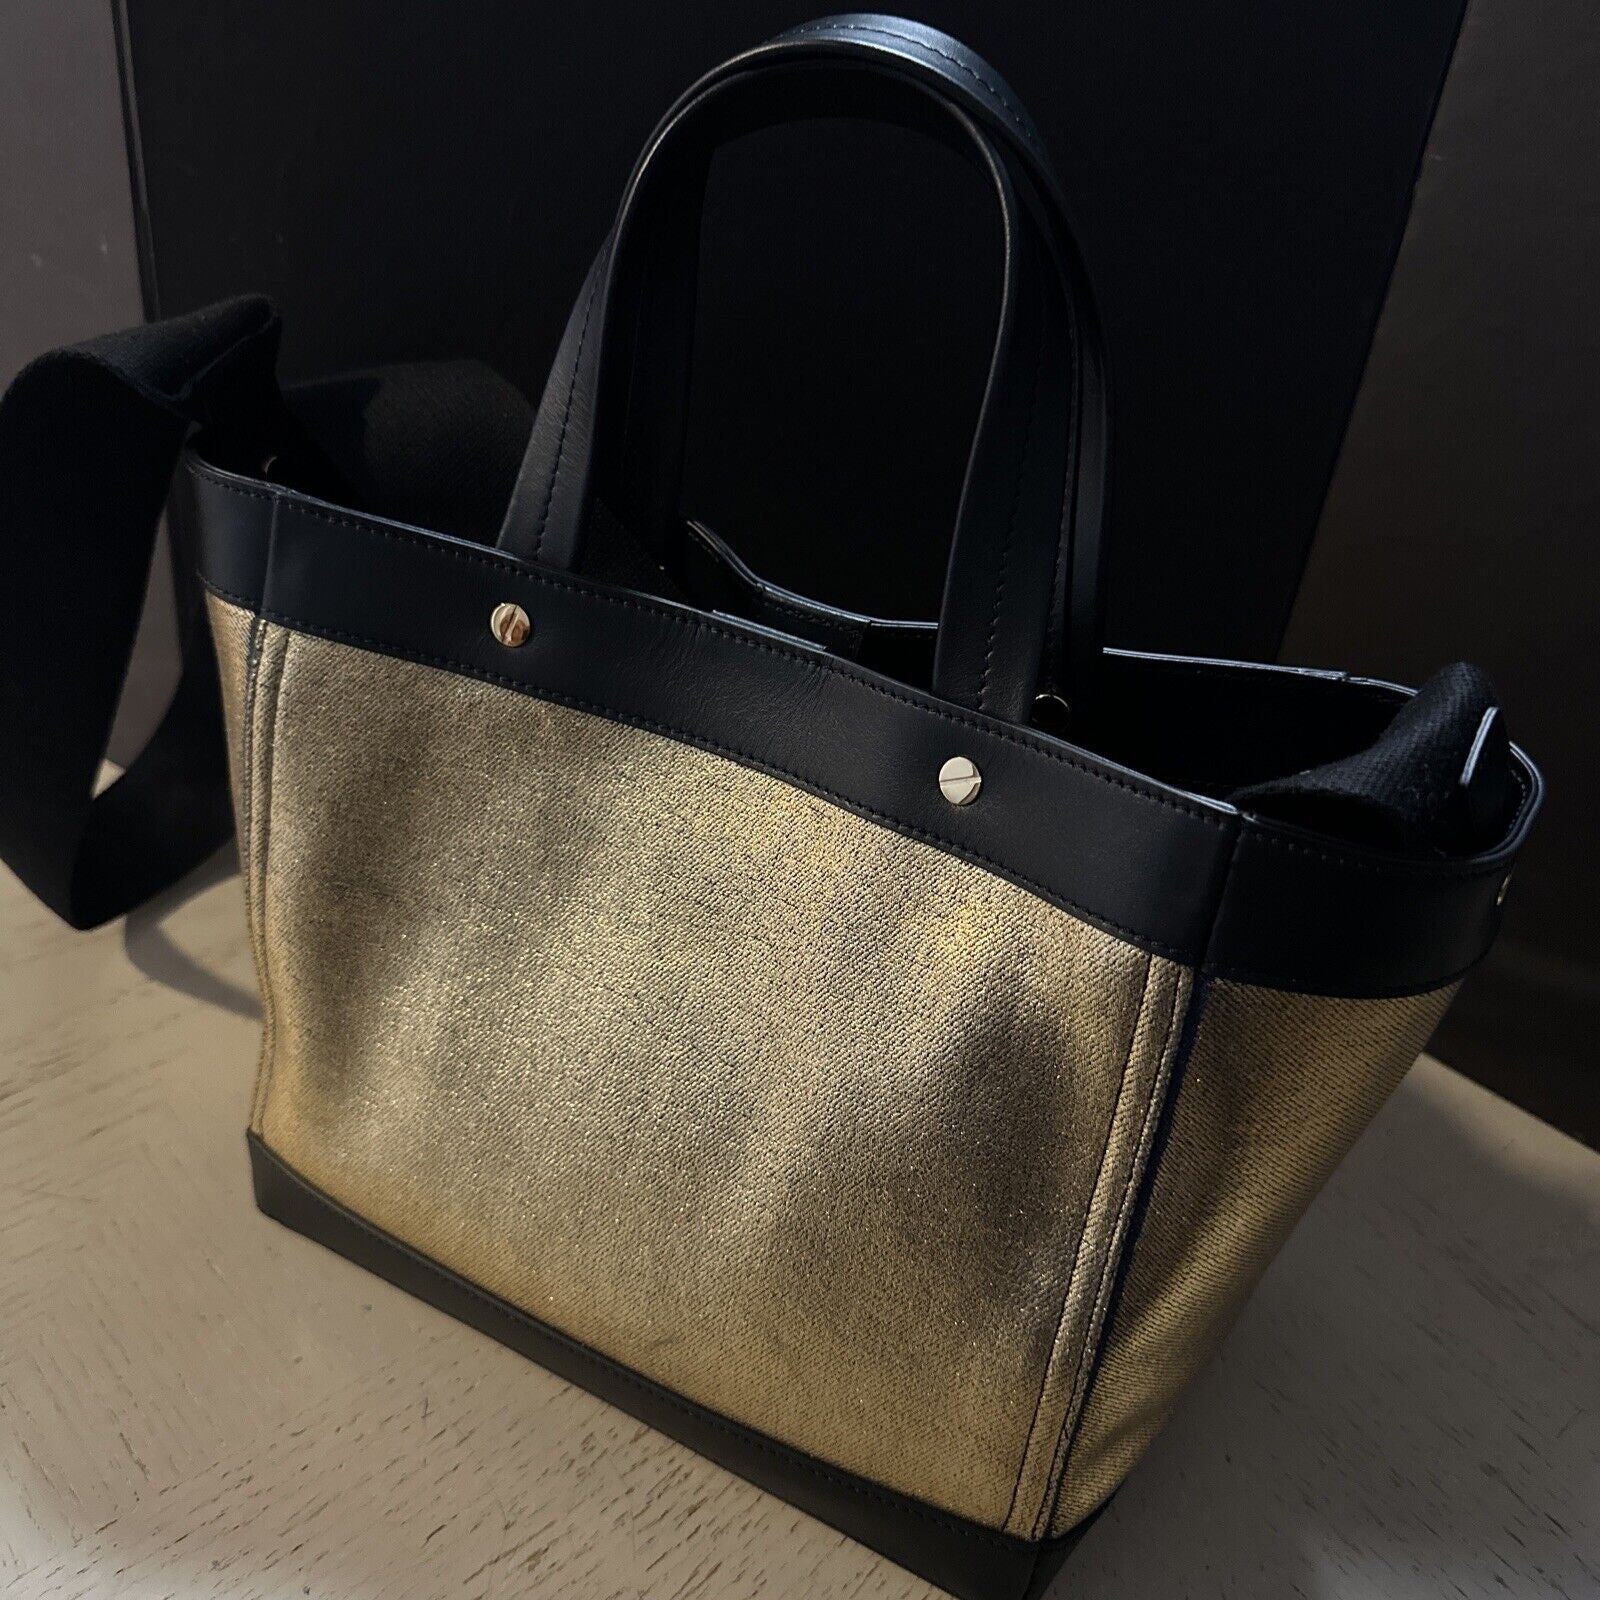 Новая мини-сумка-тоут с металлическим логотипом TOM FORD за 1690 долларов, цвет золото/черный, Италия